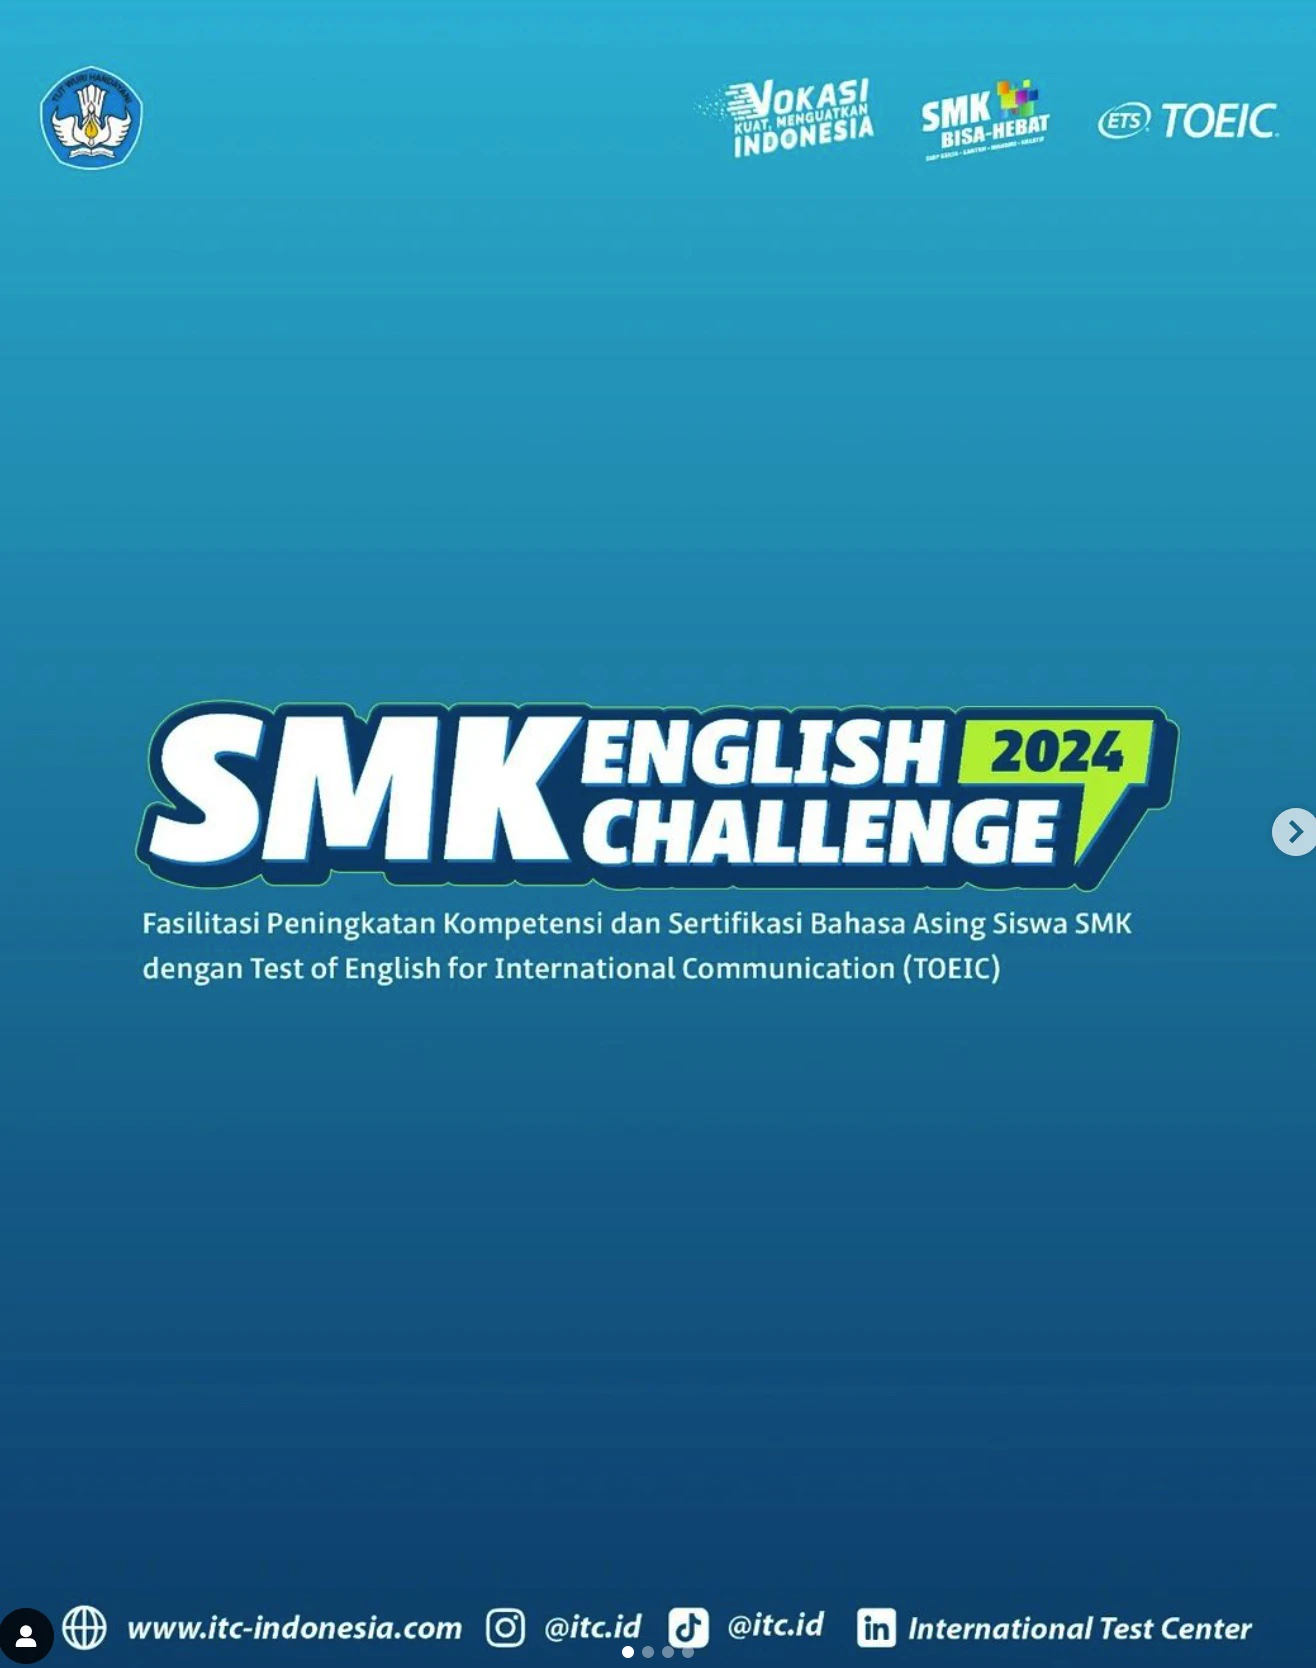 SMK English Challenge 2024